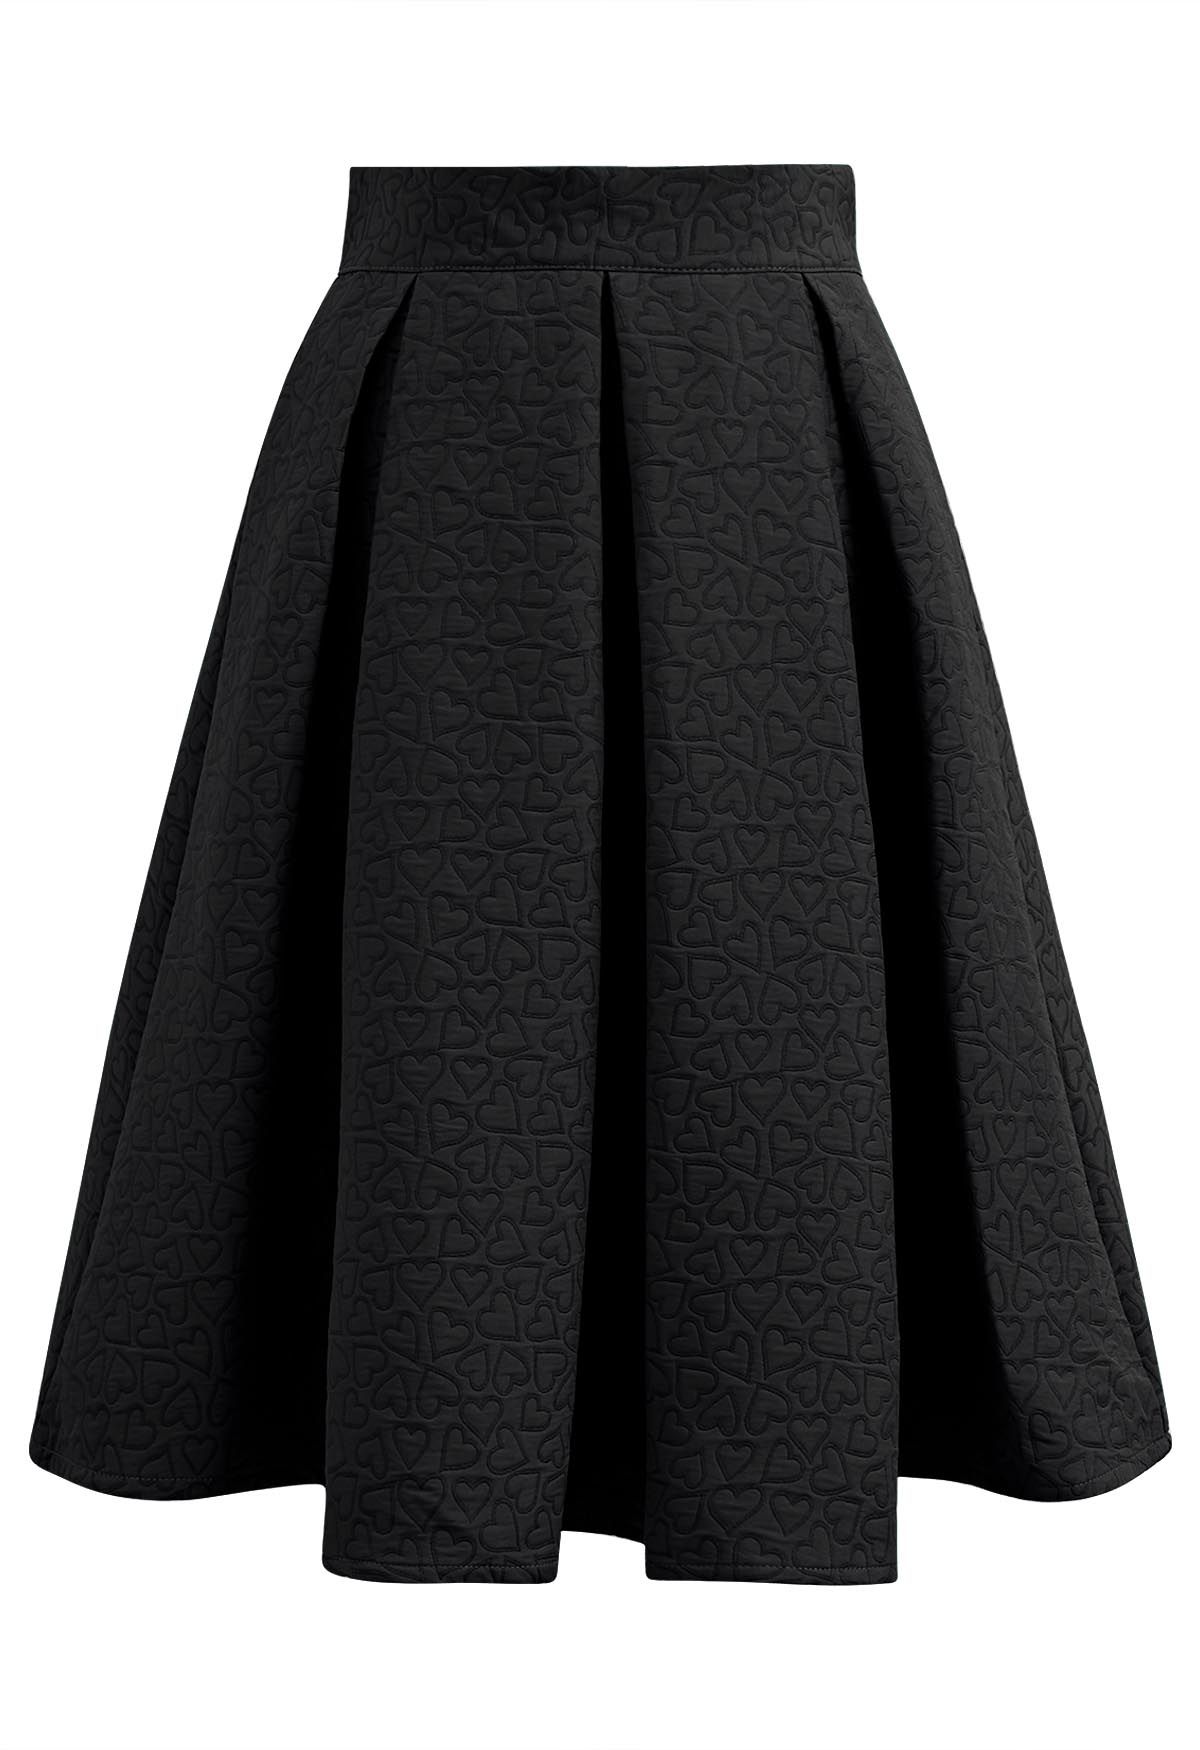 تنورة ميدي جاكار مطوي بتصميم قلوب فانتازي باللون الأسود